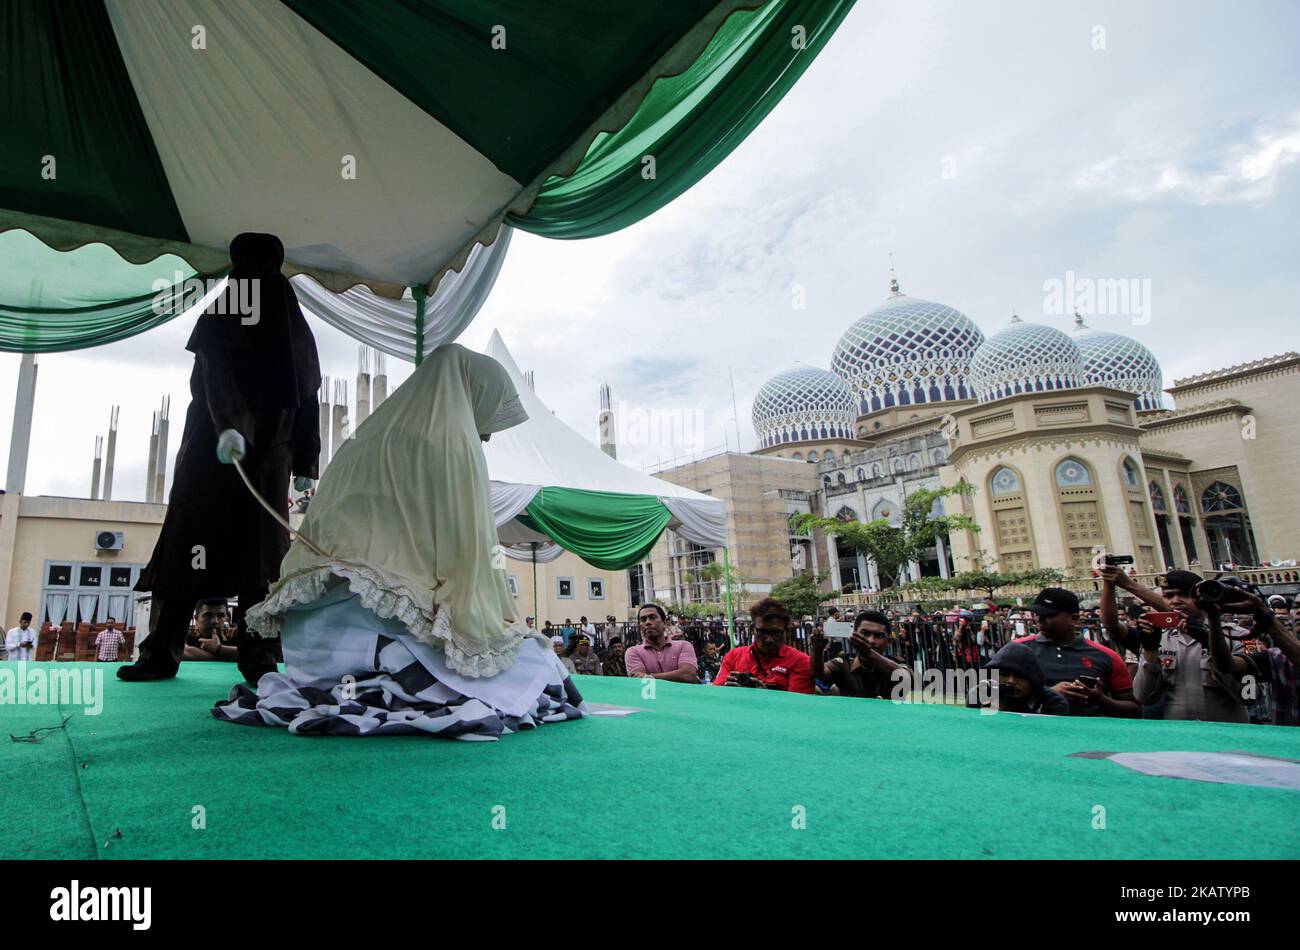 Eine aehnesische Frau wird am 22. Dezember 2017 in der Moschee des Islamischen Zentrums Lhokseumawe in der Provinz Aceh, Indonesien, vor der Öffentlichkeit wegen Verstoßes gegen das Scharia-Gesetz ausgepeitscht. Peitschen ist eine Form der Strafe, die in Aceh für die Verletzung des islamischen Scharia-Gesetzes verhängt wurde. (Foto von Fachrul Reza/NurPhoto) Stockfoto